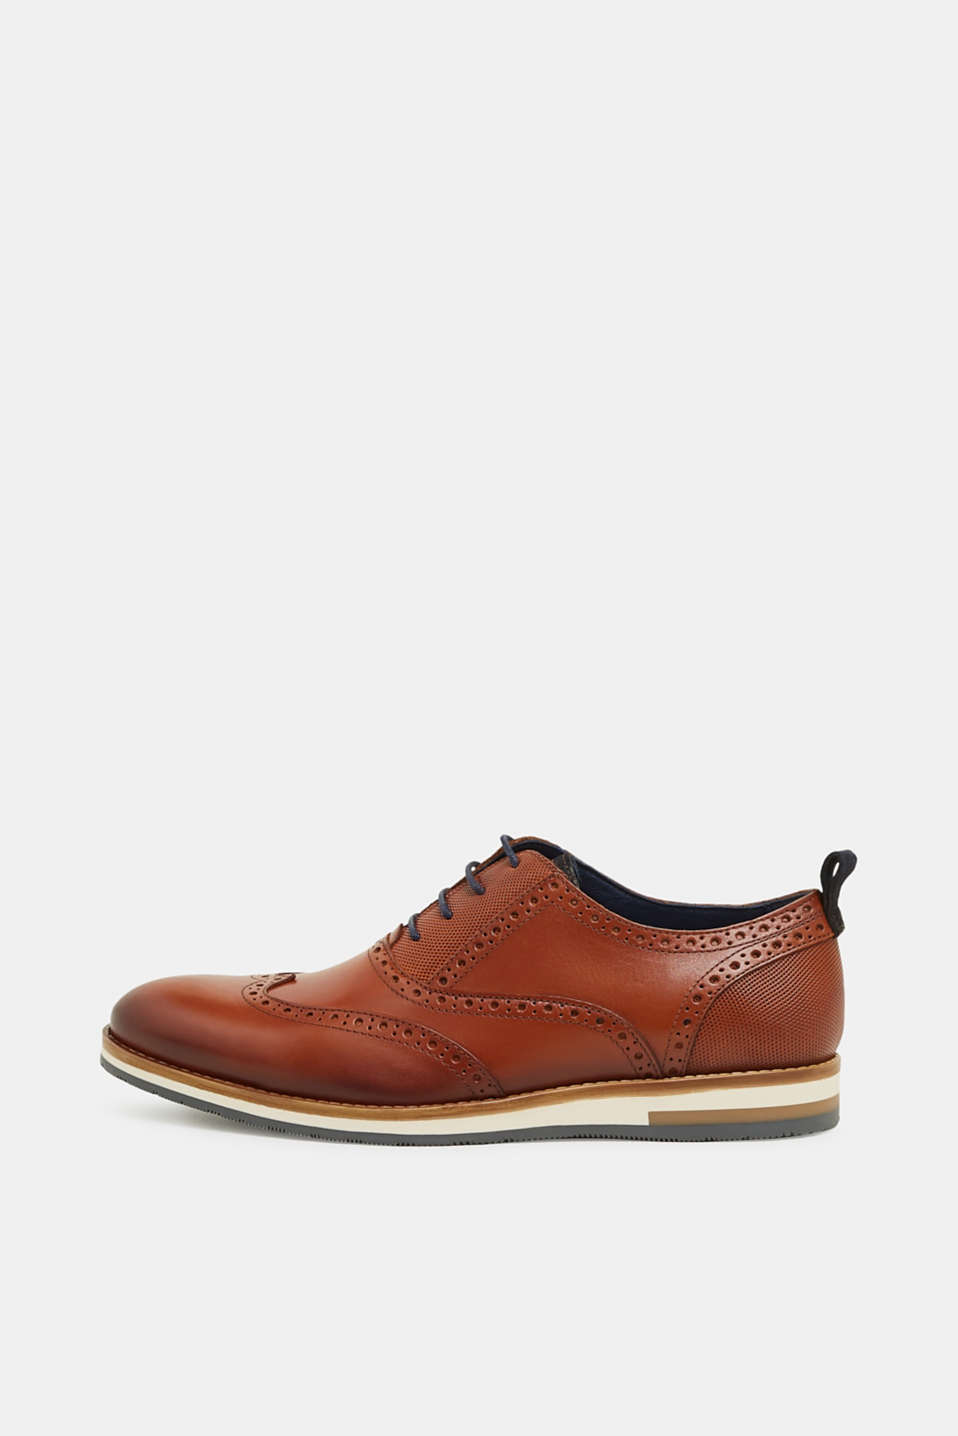 Esprit - Leather Derby shoes at our Online Shop